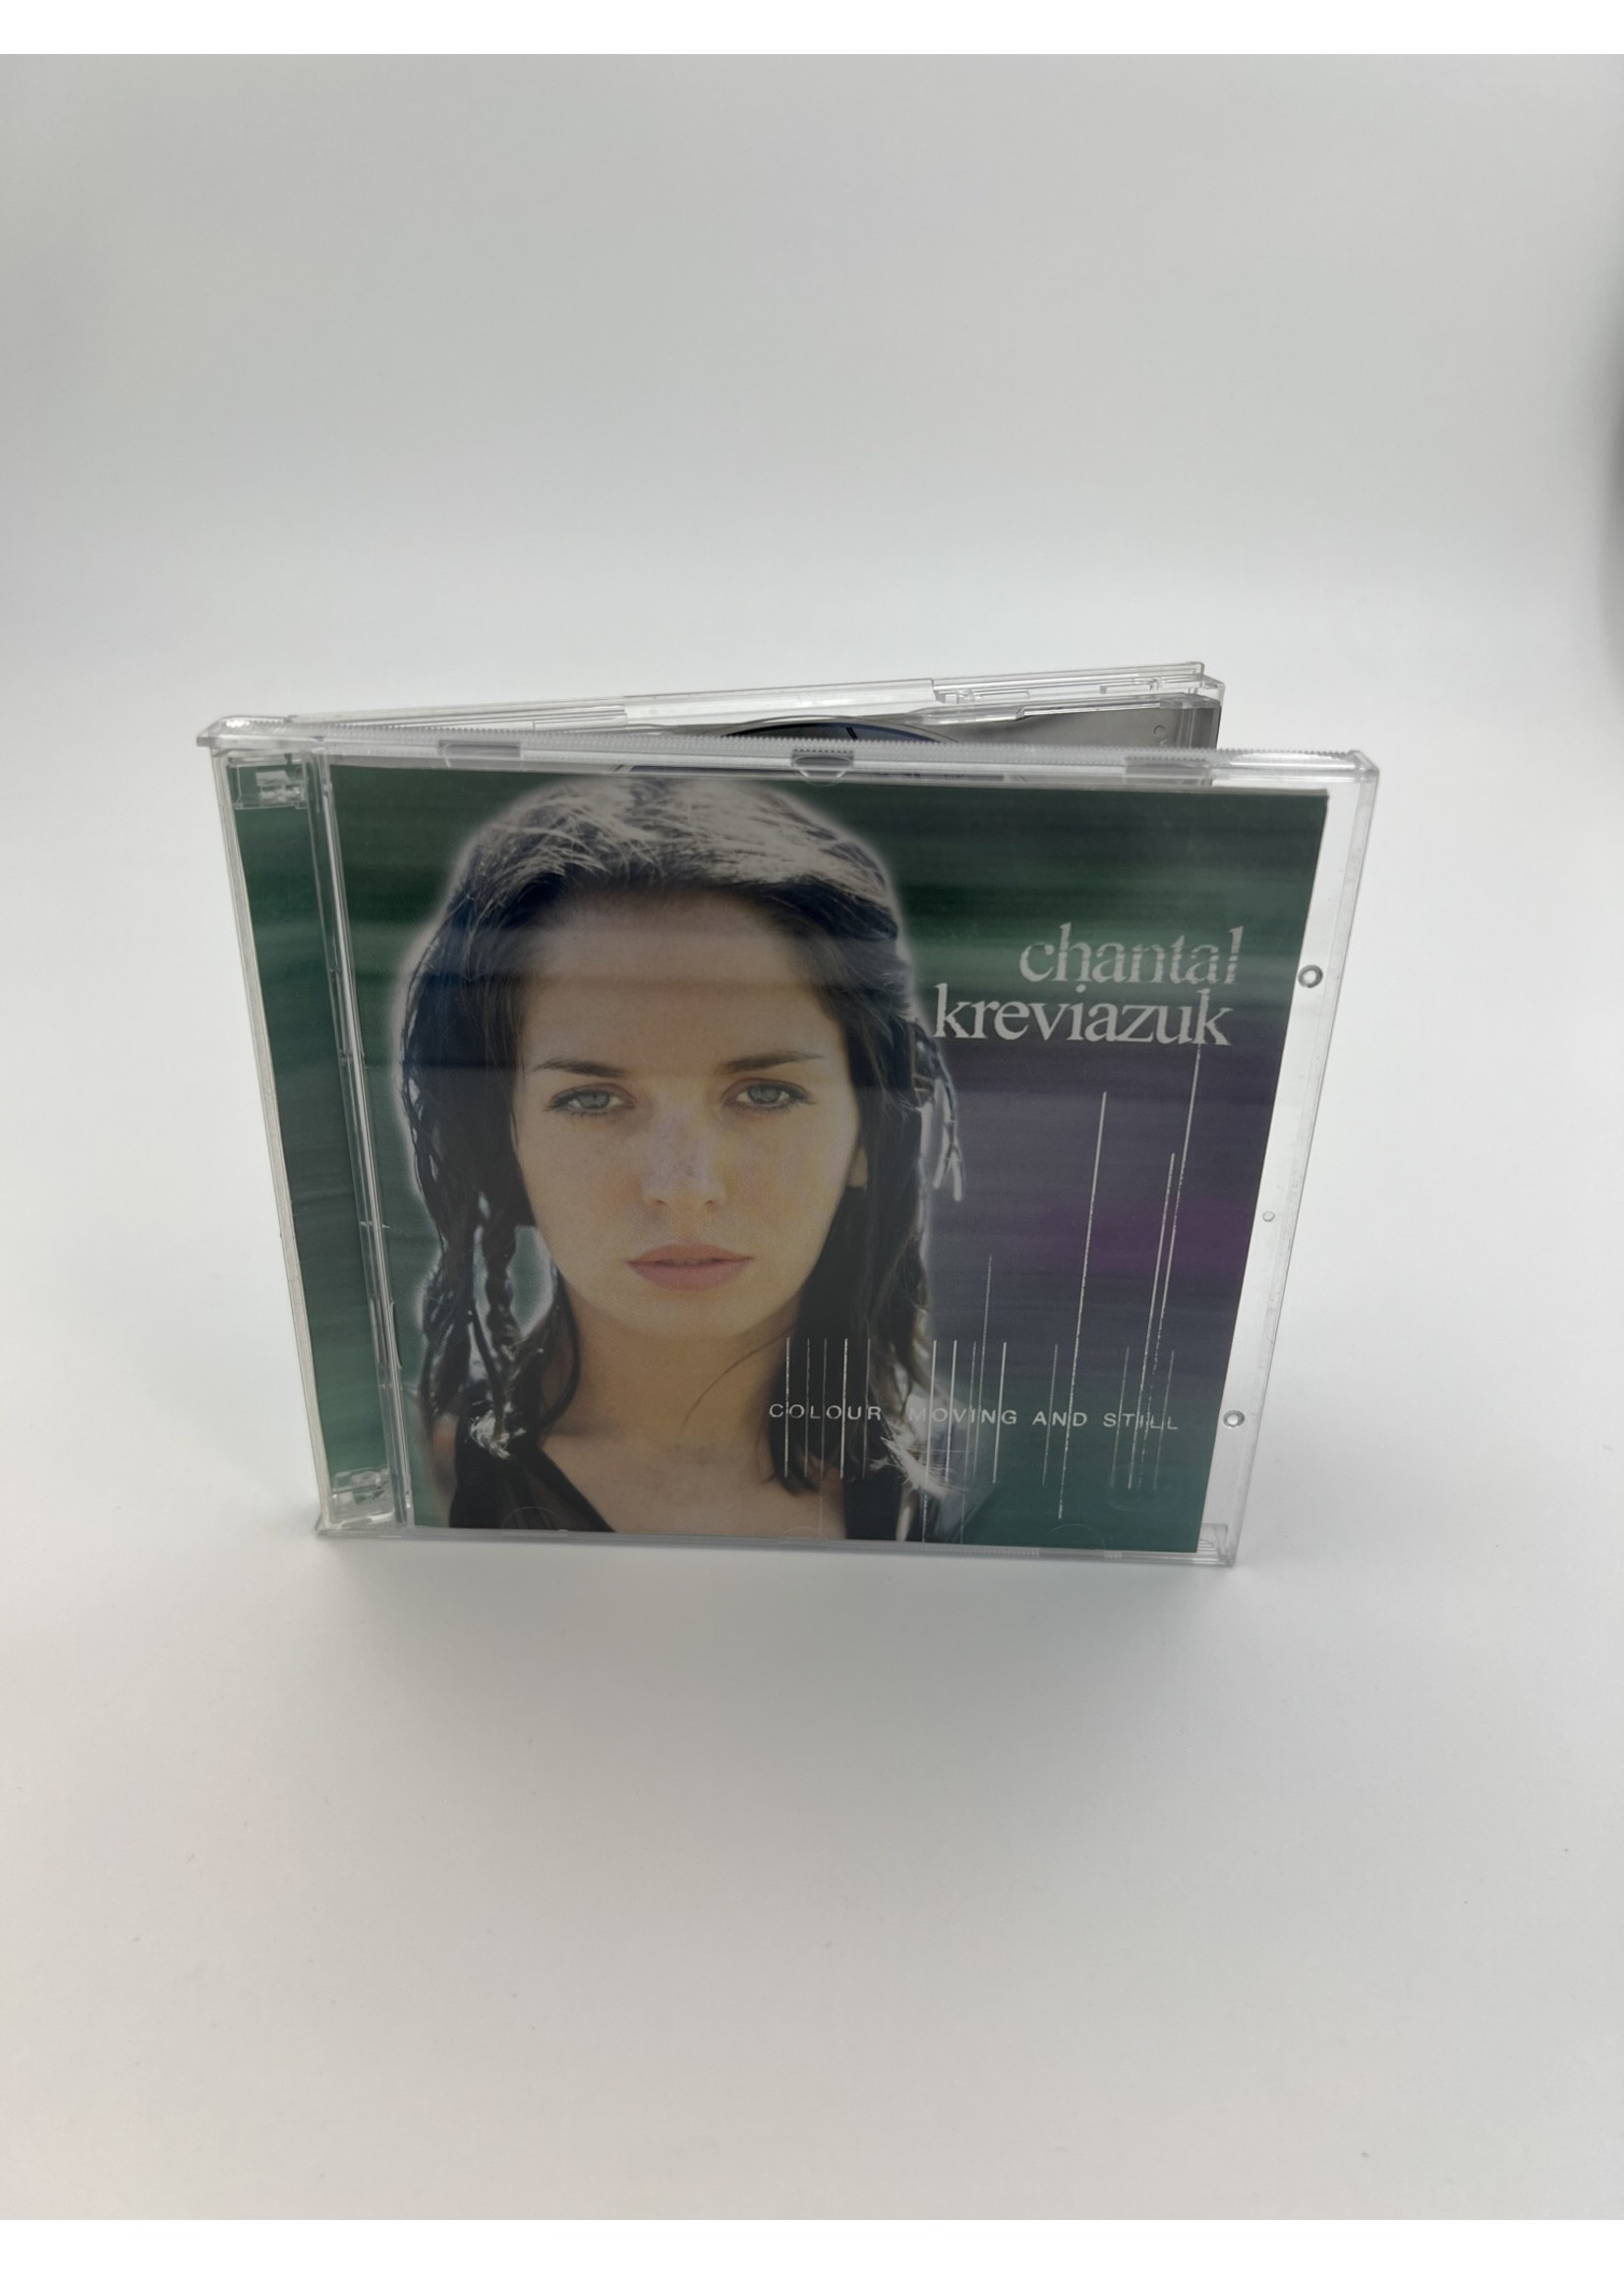 CD Chantal Kreviazuk Colour Moving And Still Cd